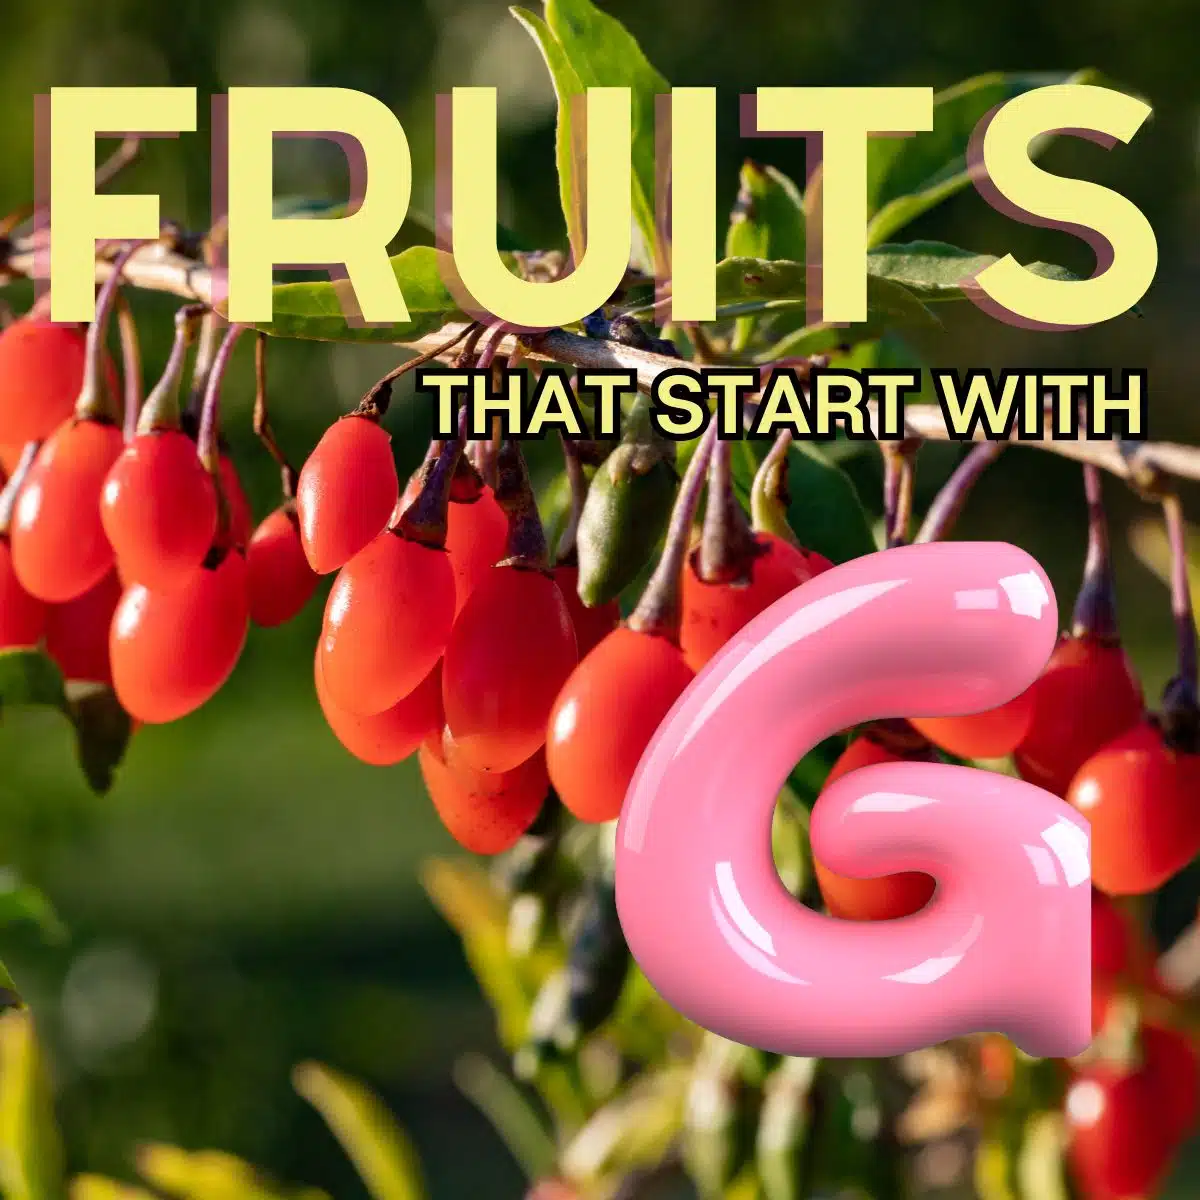 Gambar persegi untuk buah buahan yang berawalan huruf G.